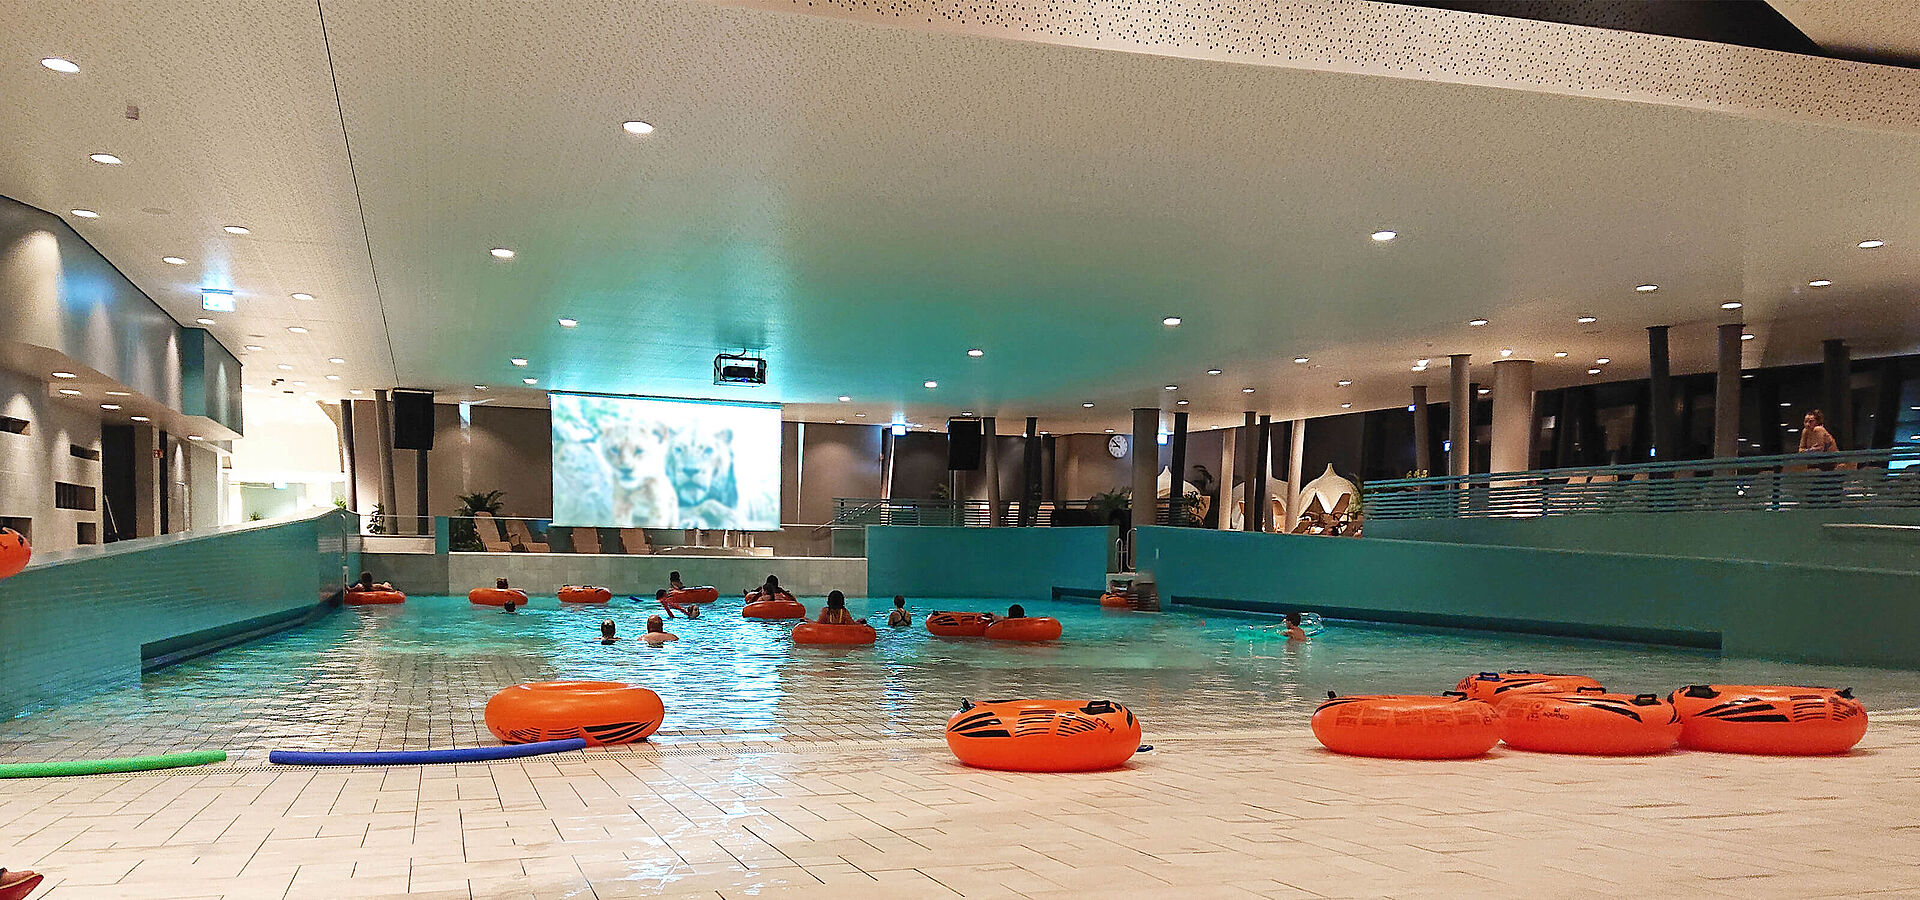 Weissenhäuser Strand Events an der Ostsee: Kinoabend im Subtropischen Badeparadies (Schwimmbad Kino) 